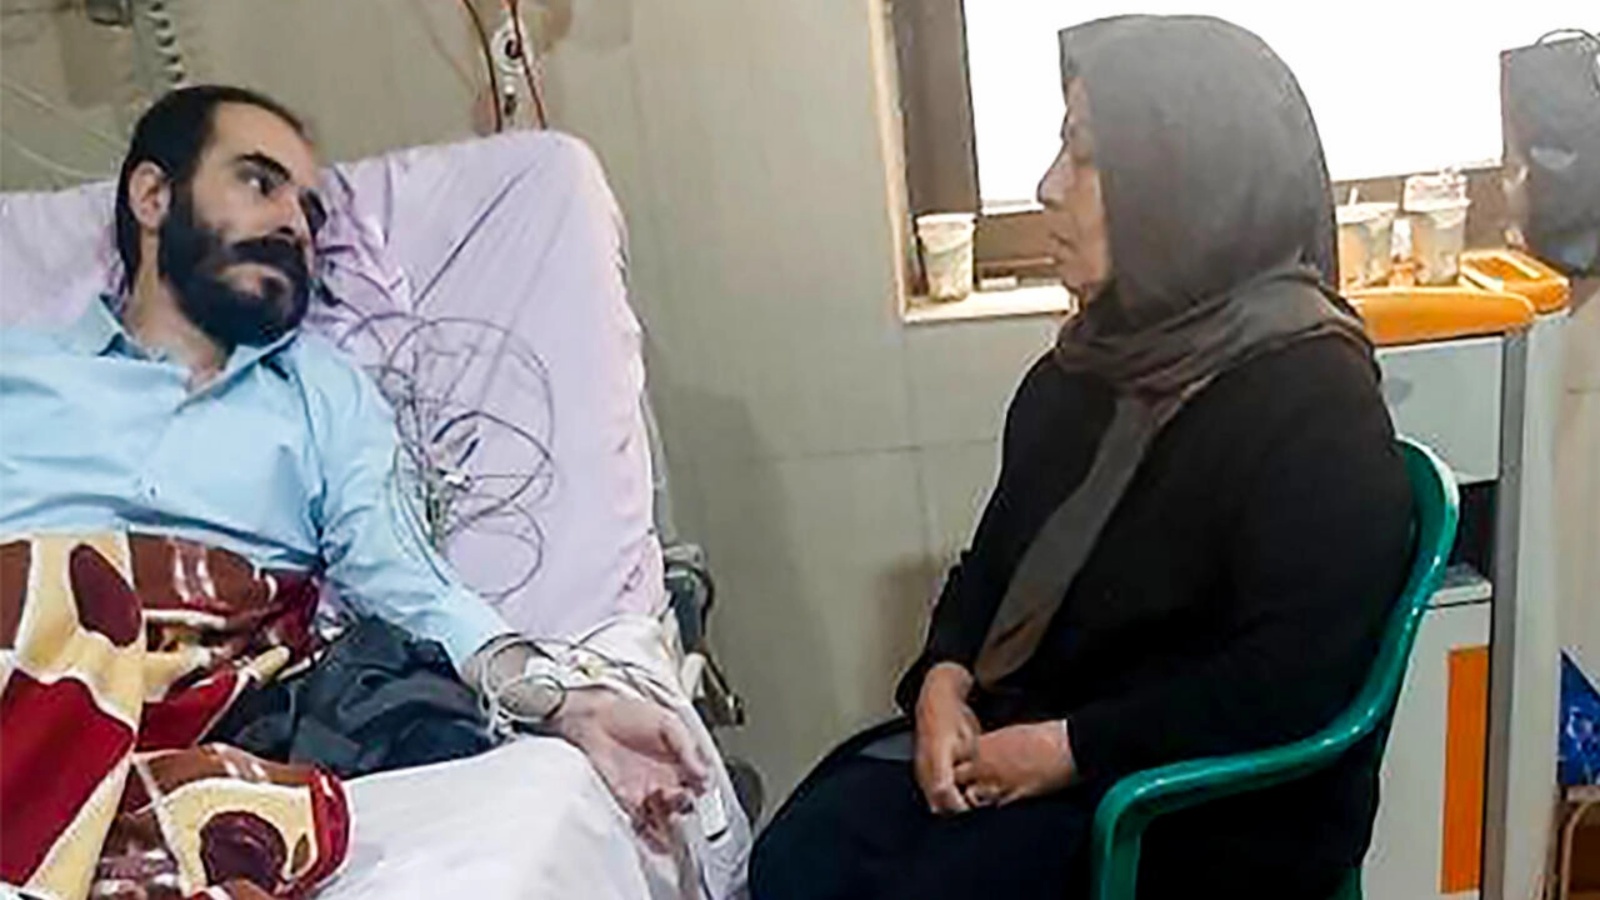 صورة وزعها المركز الإعلامي التابع للسطة القضاء في إيران تظهر حسين رونقي في المستشفى بينما تجلس والدته بجانبه في طهران بتاريخ 14 نوفمبر 2022